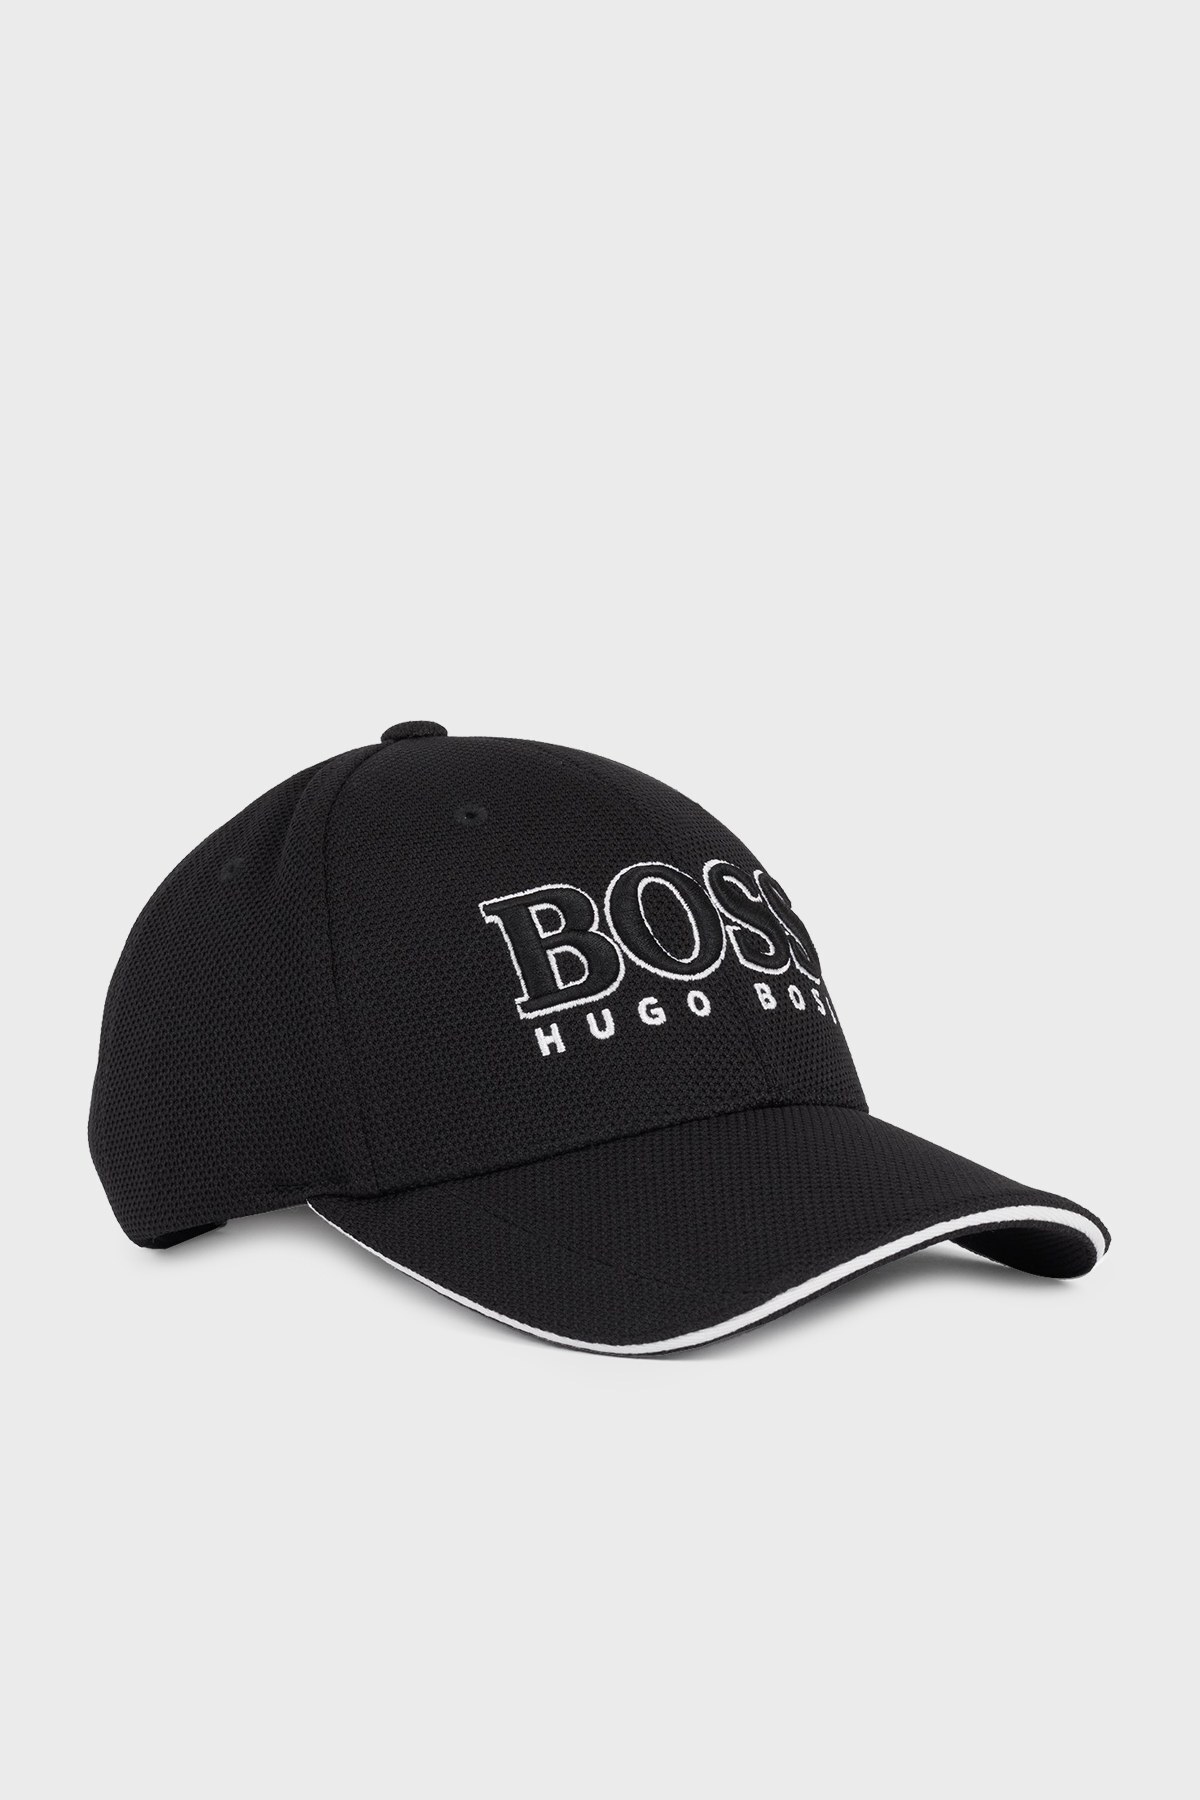 Boss Logolu Erkek Şapka S 50251244 001 SİYAH